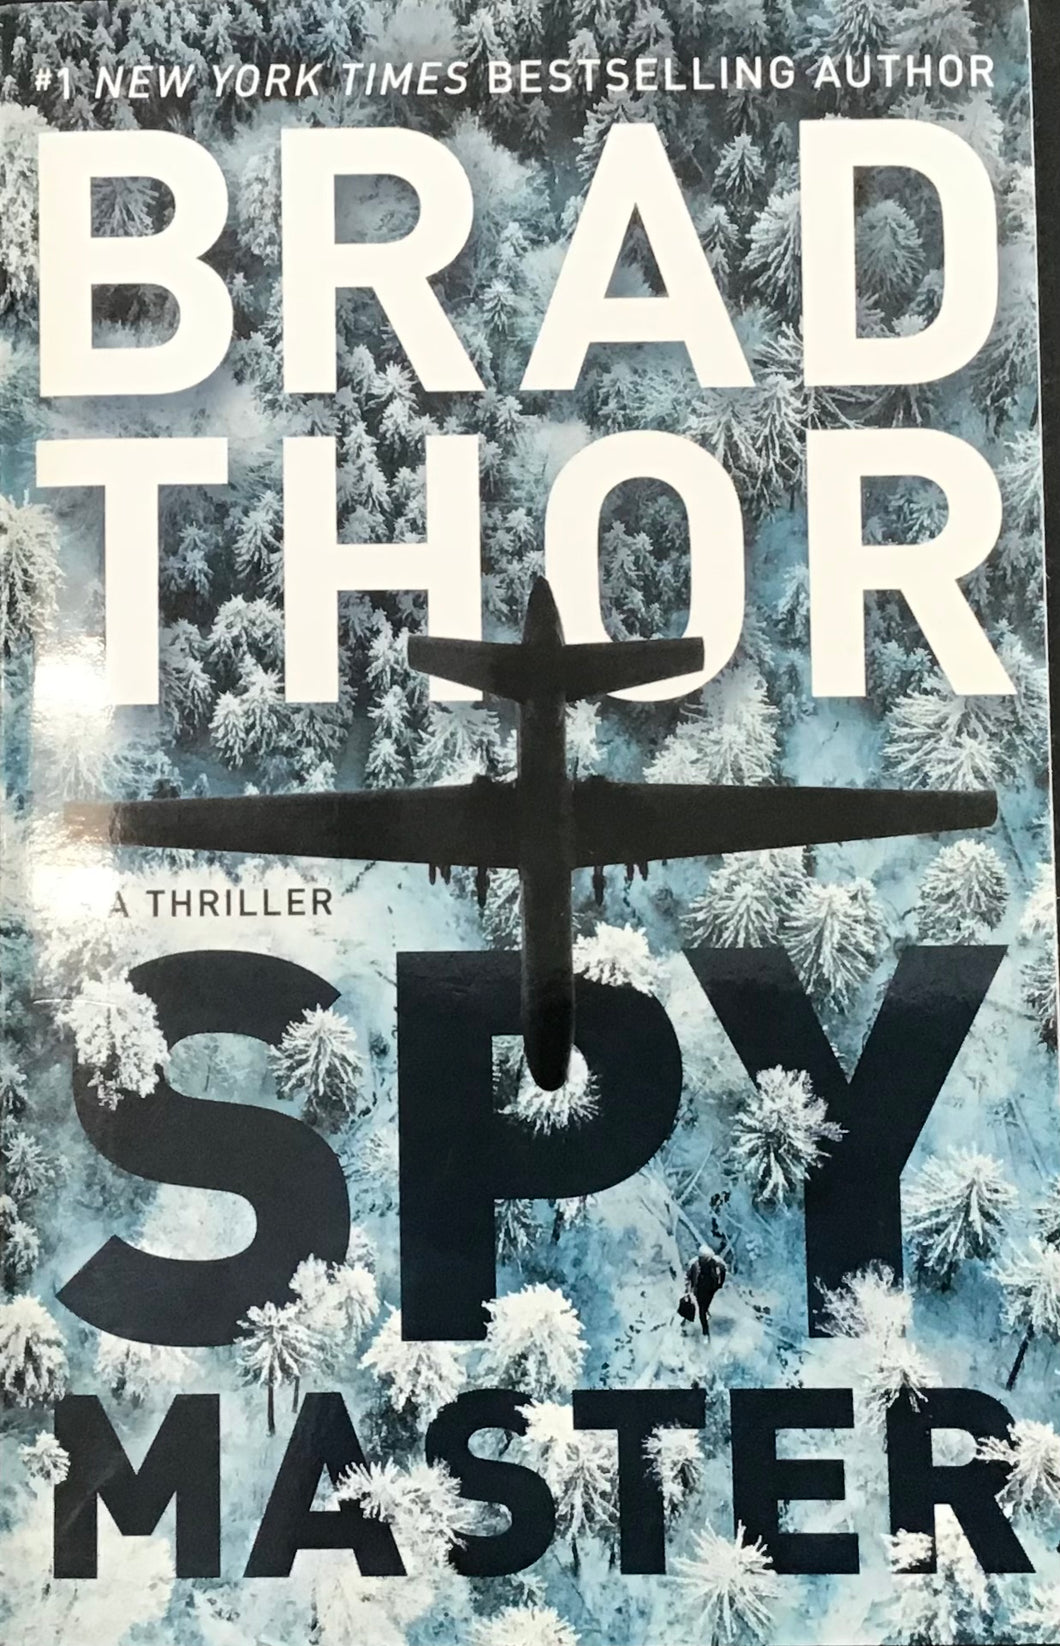 Spymaster, Brad Thor